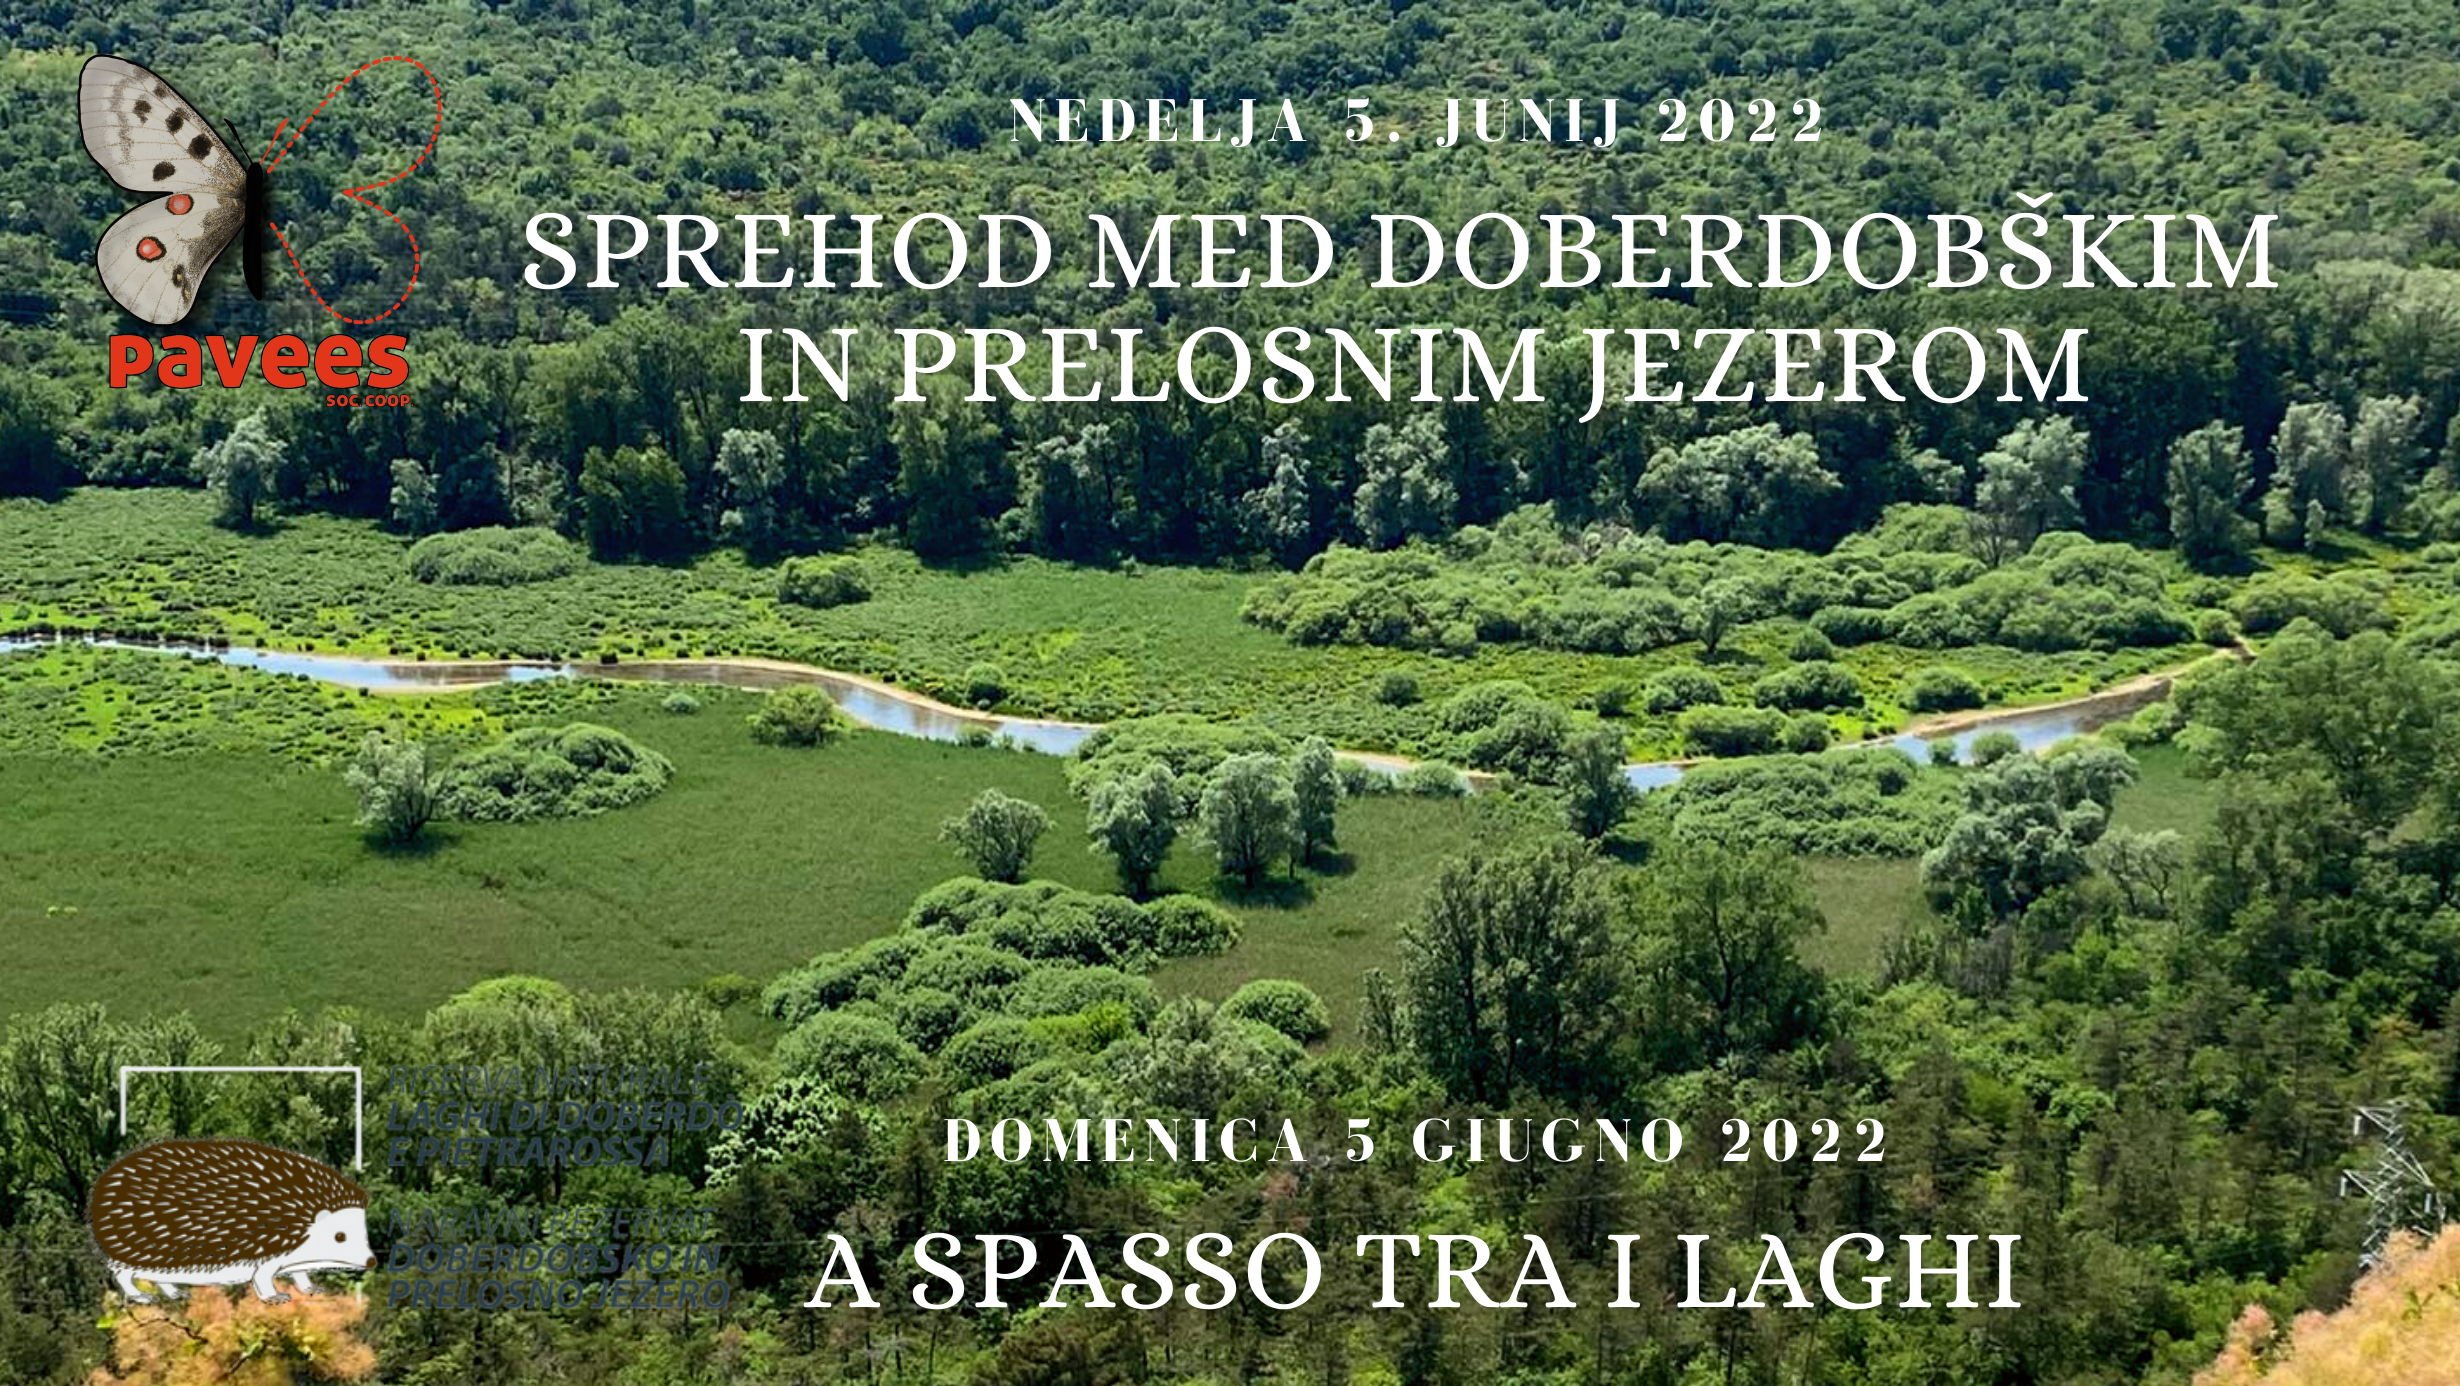 Sprehod med Doberdobškim in Prelosnim jezerom - Nedelja 5. junij 2022